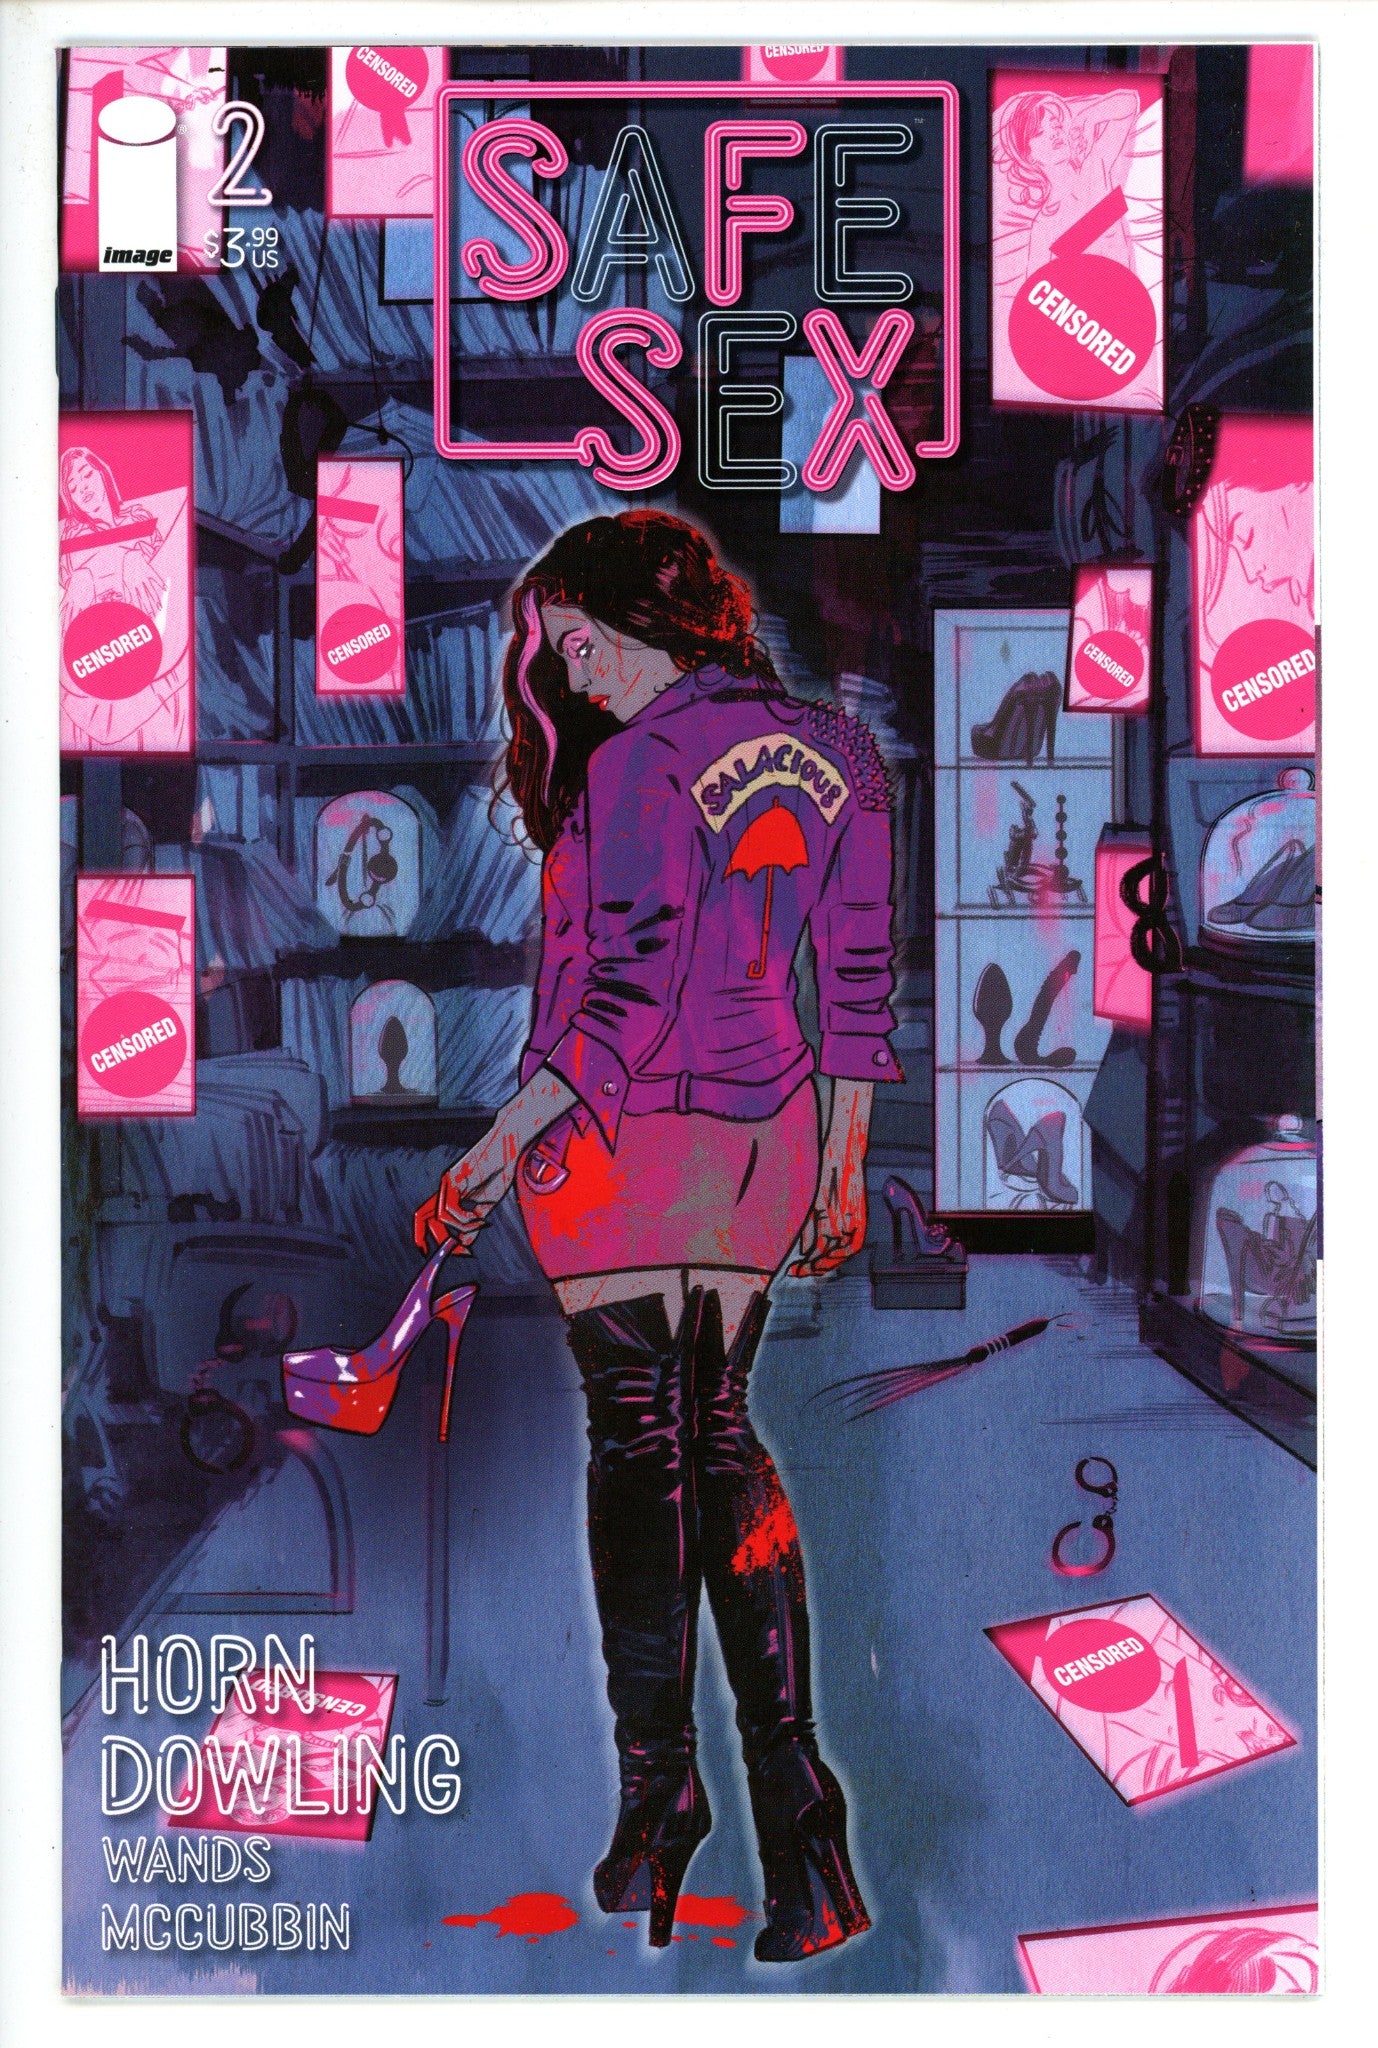 SFSX (Safe Sex) 2